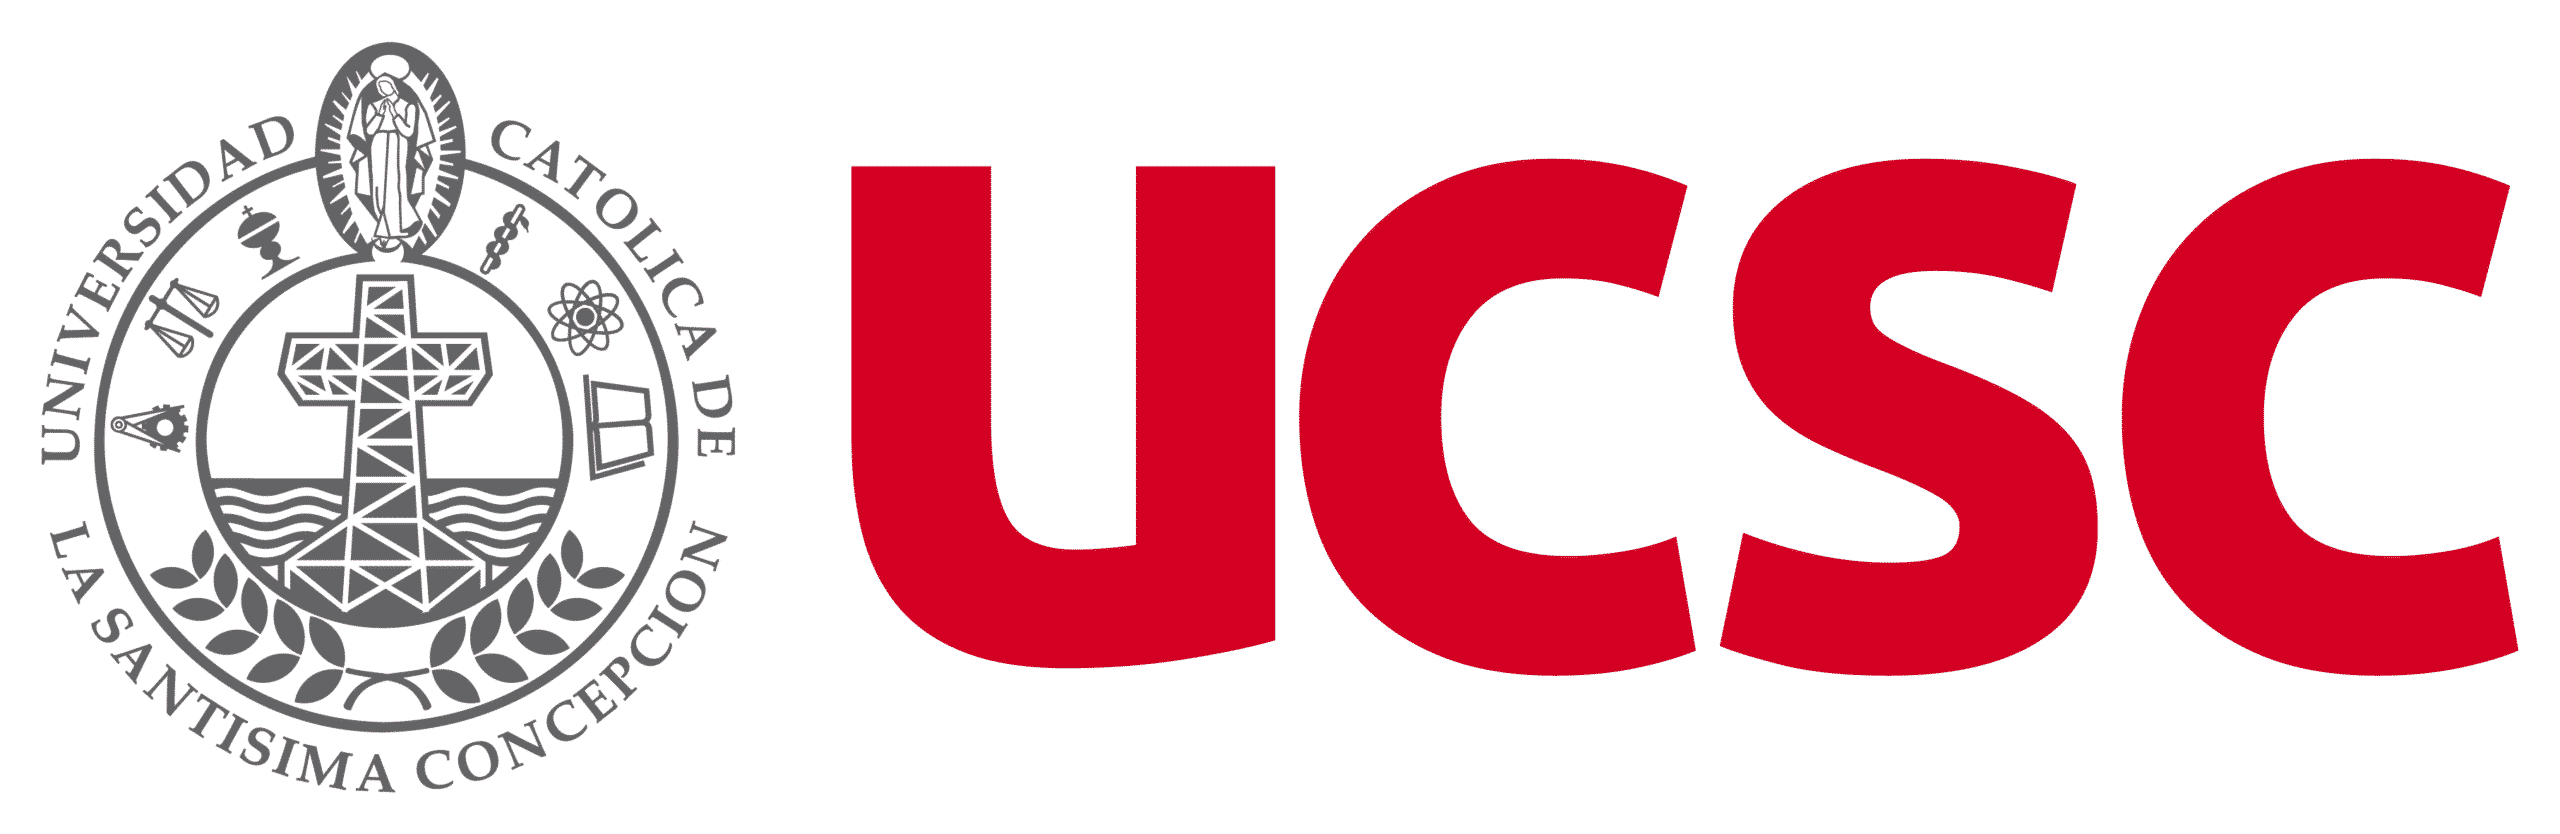 Eligemadera UCSC Logo